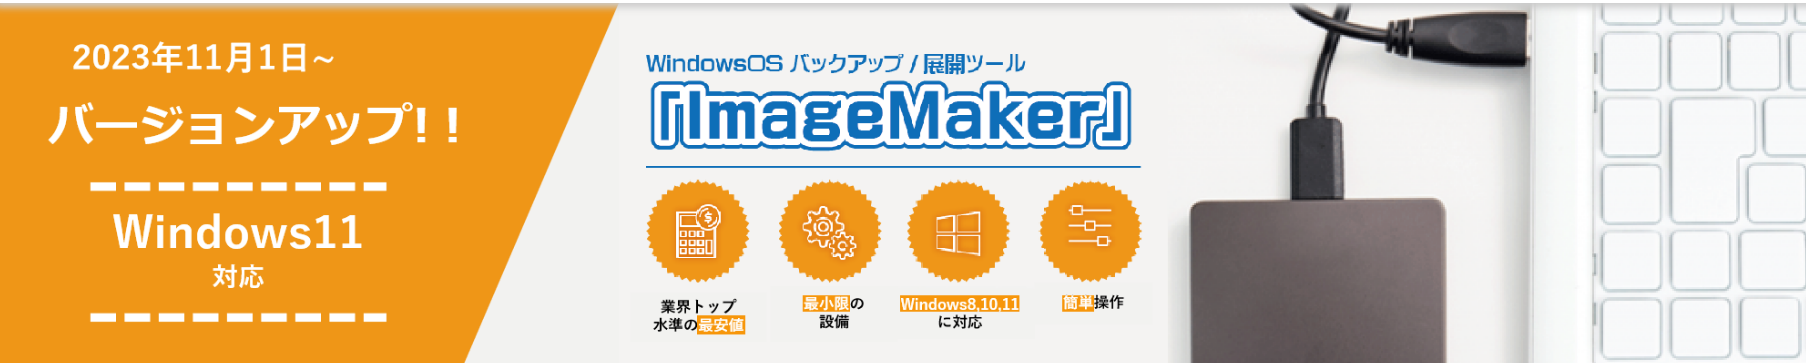 ImageMaker ロゴ